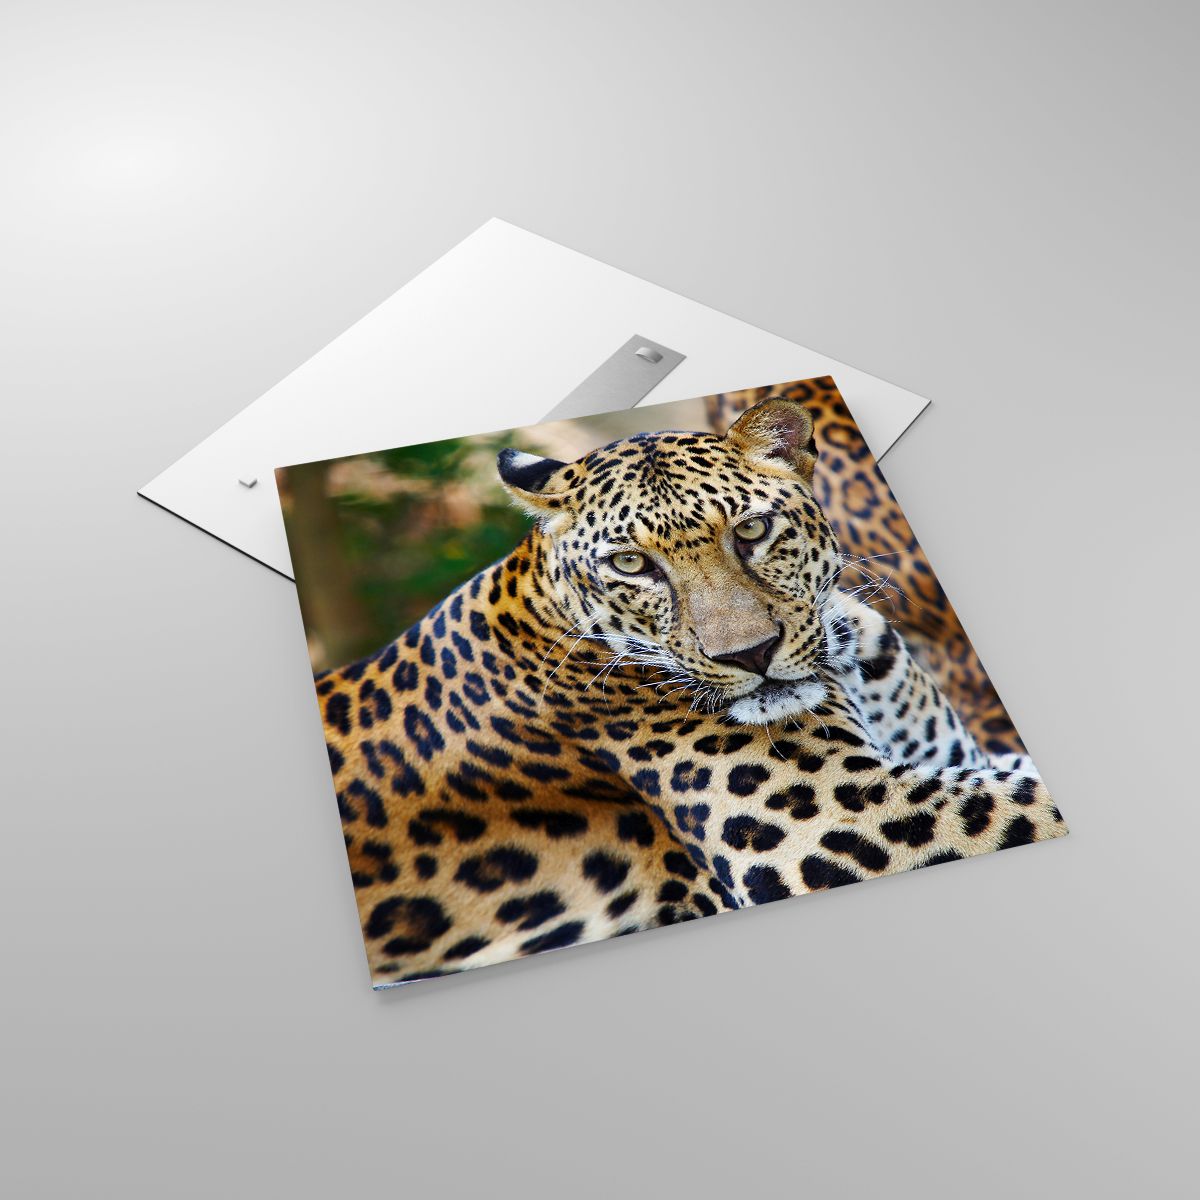 Glasbild Tiere, Glasbild Leopard, Glasbild Afrika, Glasbild Urwald, Glasbild Wildes Tier